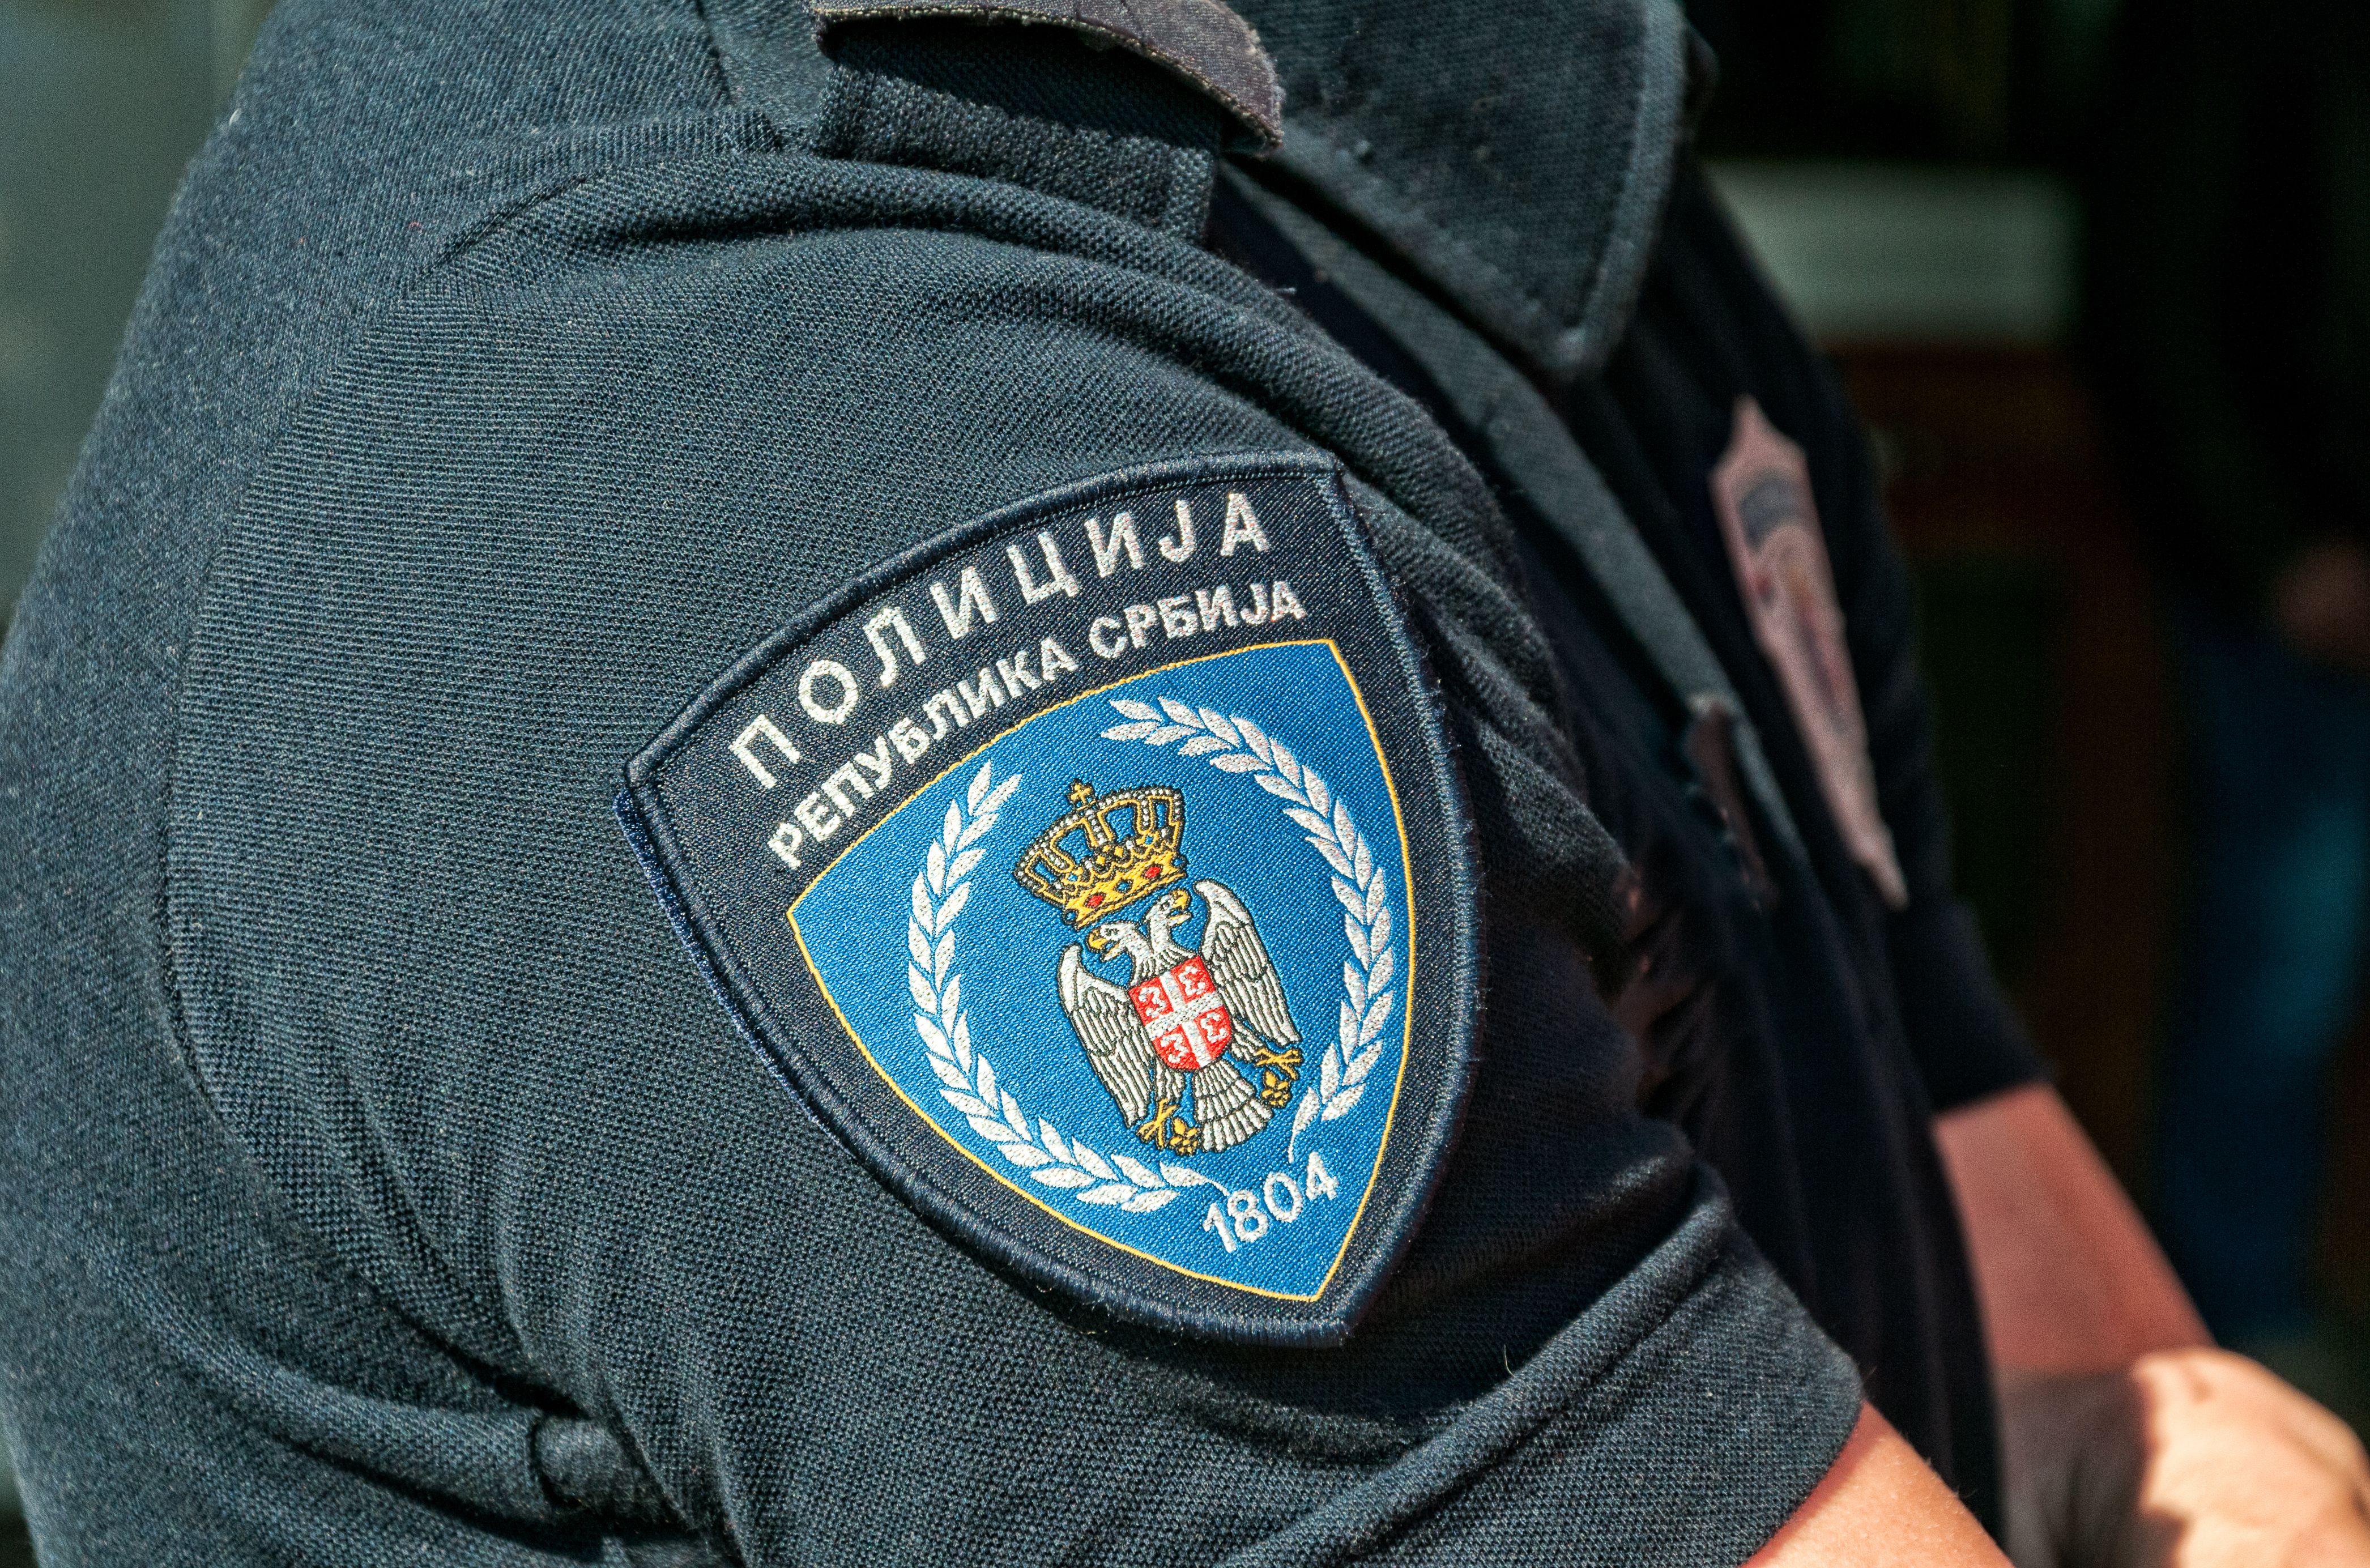 Полицаи и митничари позволявали забранен внос от България